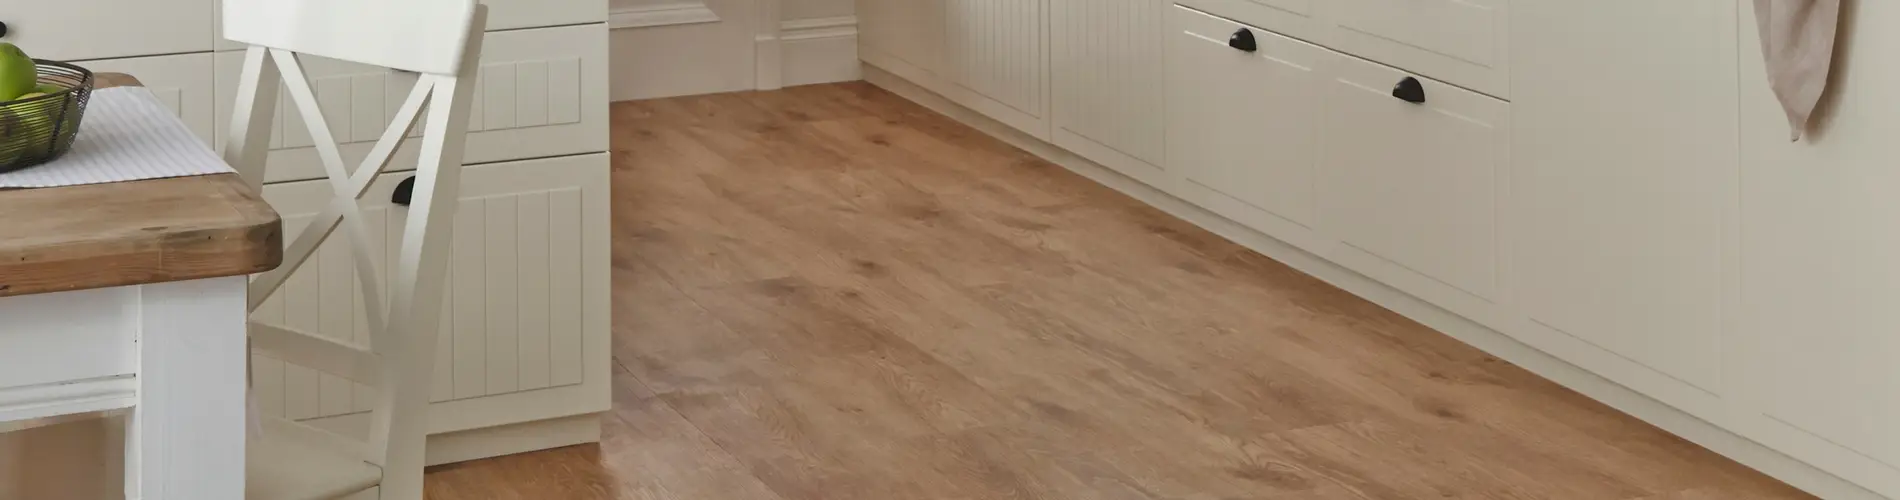 harswood flooring in kitchen